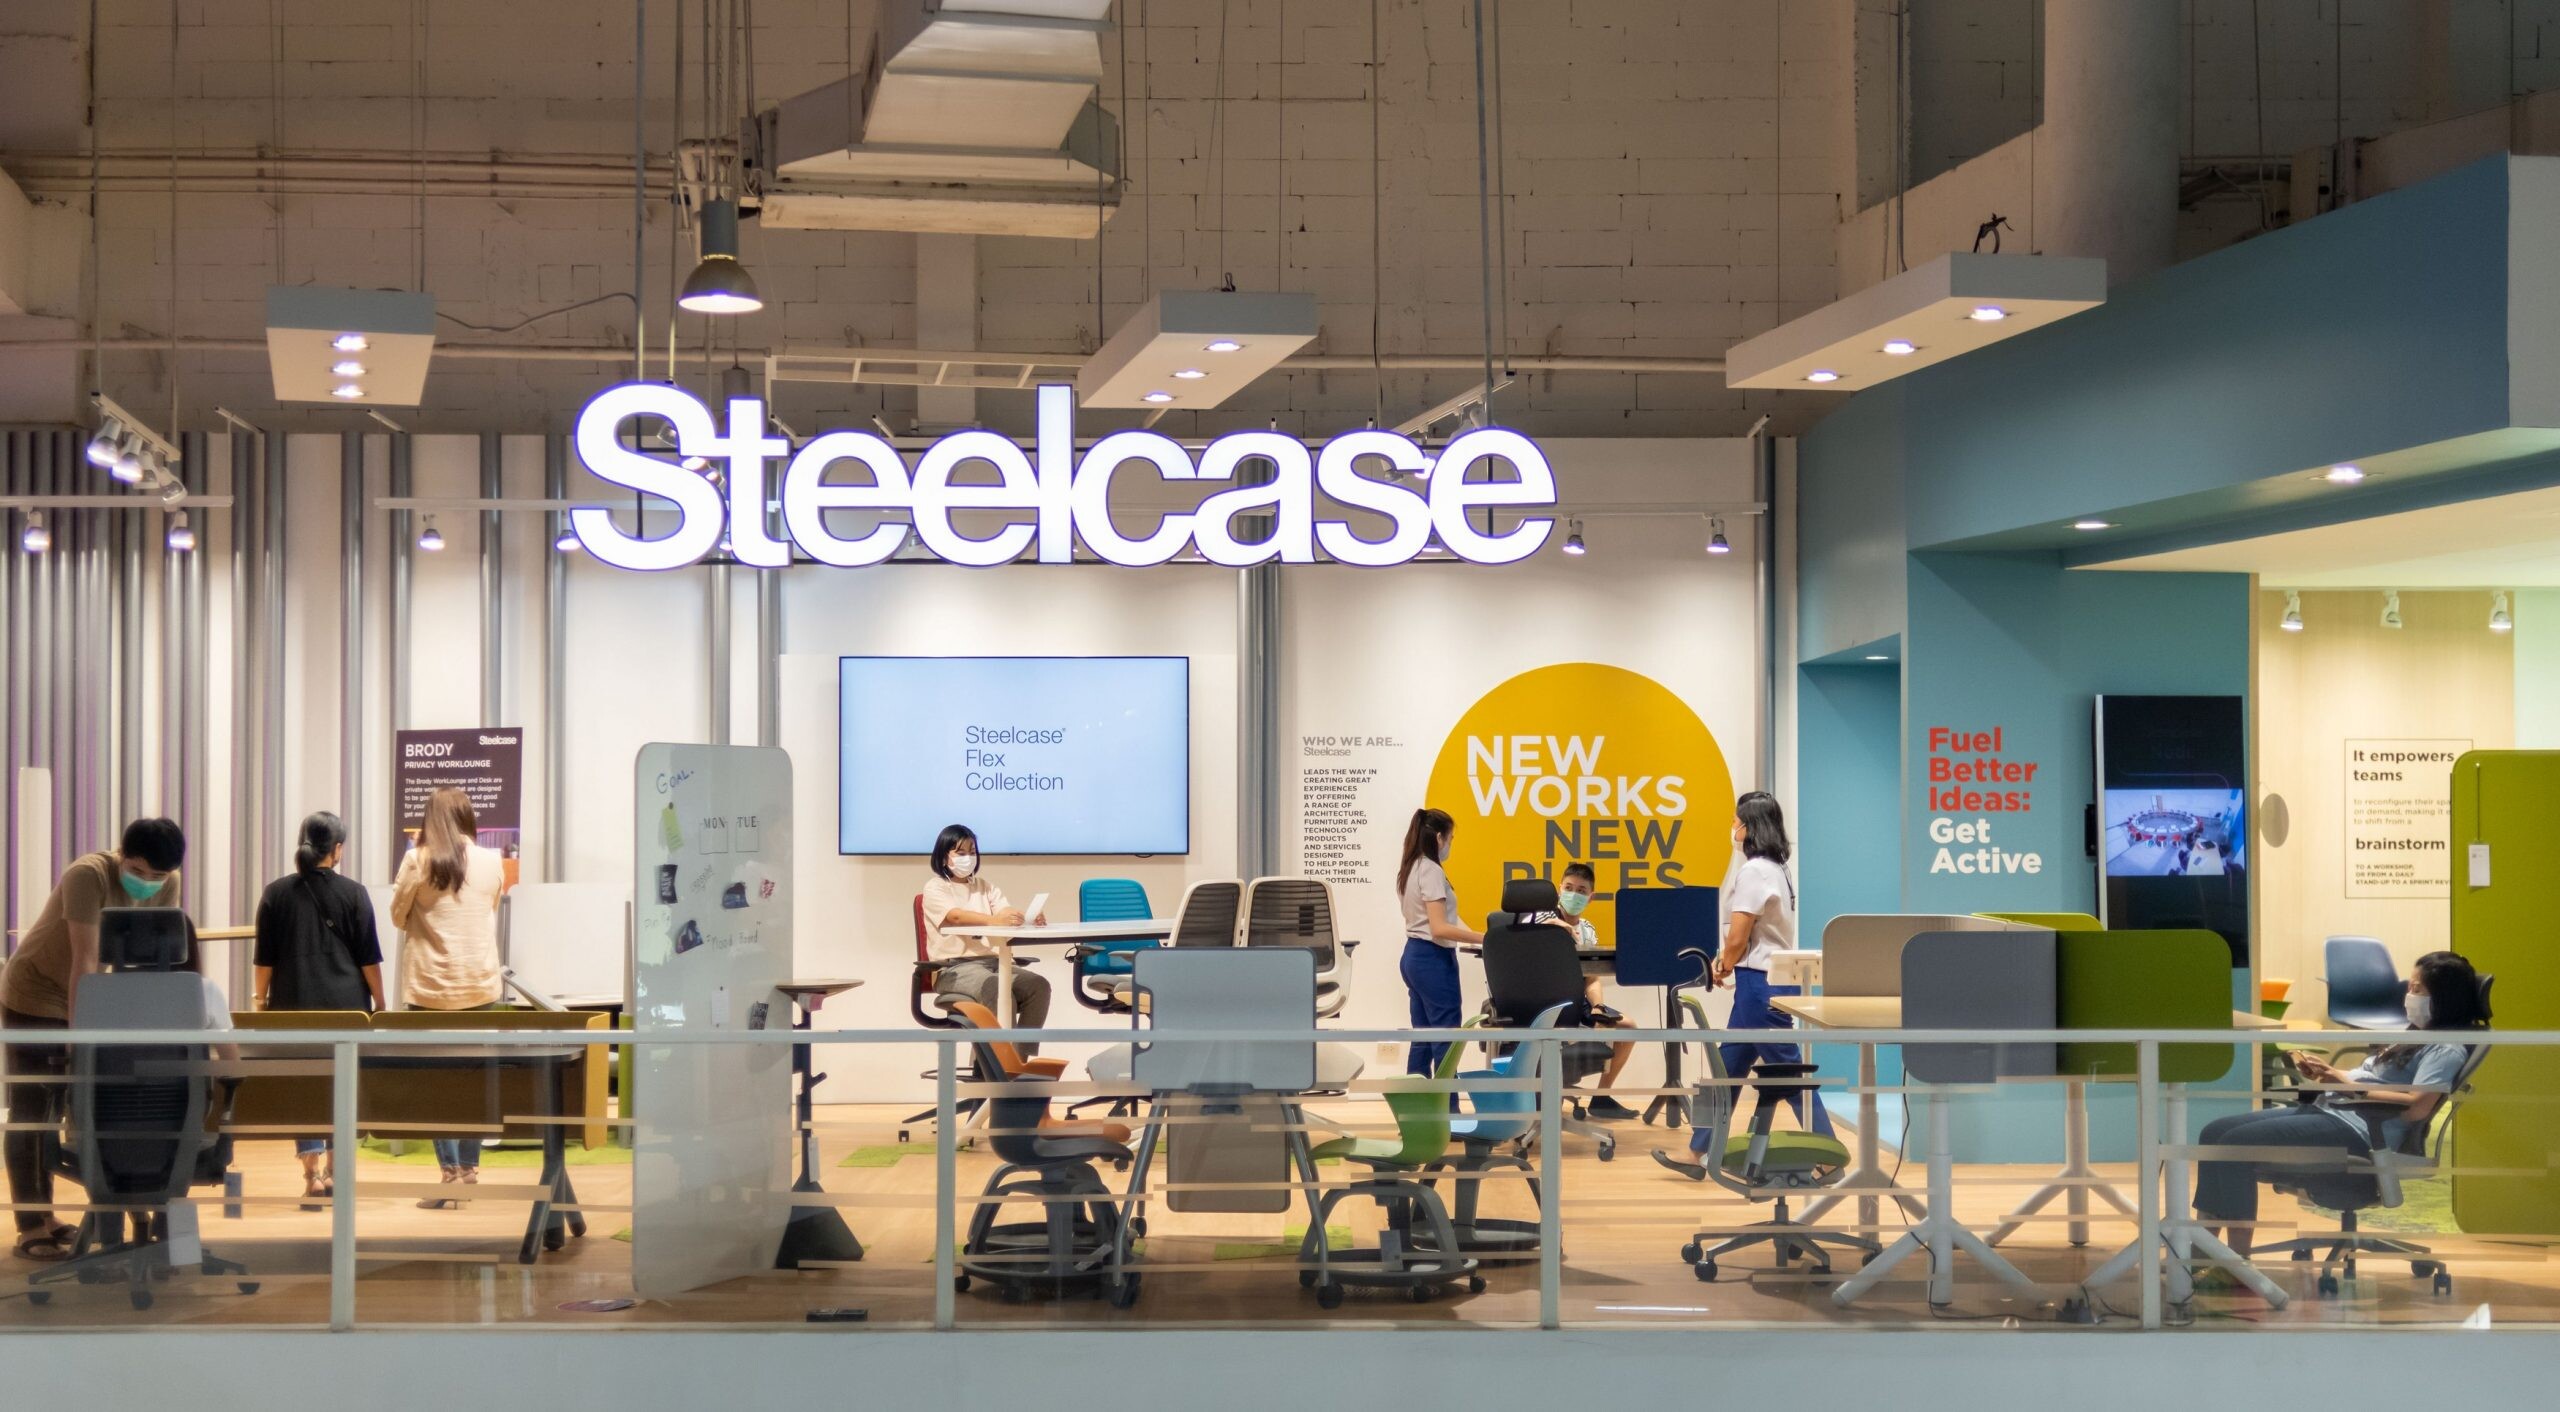 โมเดอร์นฟอร์มเปิด Steelcase Flagship Store แห่งแรกในไทย เชิญสัมผัสนวัตกรรมที่ช่วยเพิ่มประสิทธิภาพการทำงานของ Steelcase พร้อมเปิดตัวเฟอร์นิเจอร์ที่ตอบโจทย์คนทำงานยุคใหม่